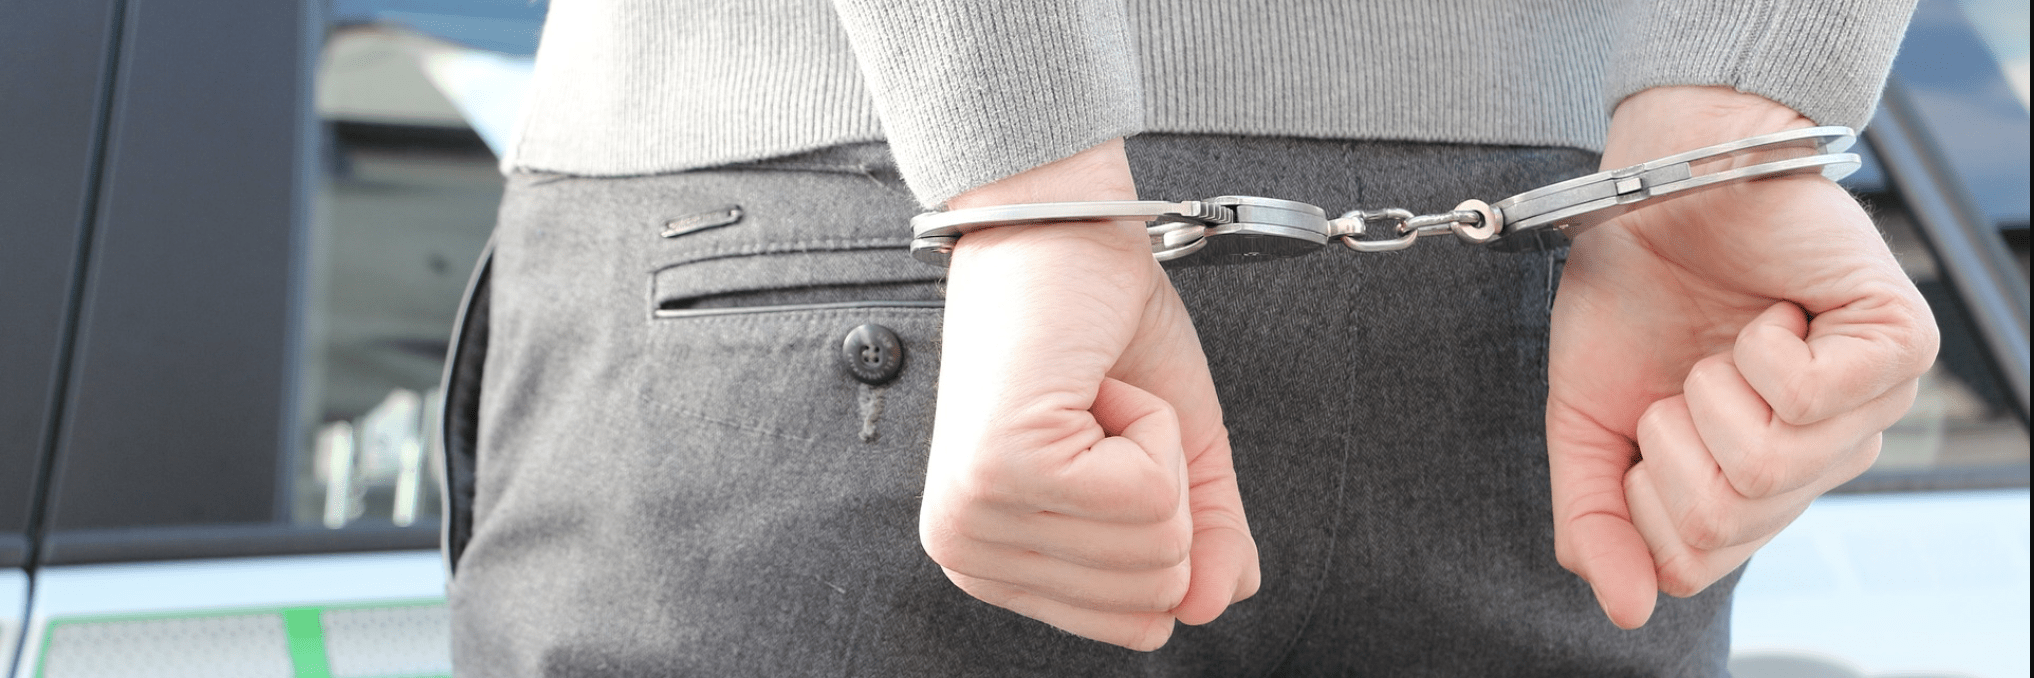 A Man in Handcuffs Behind Hand